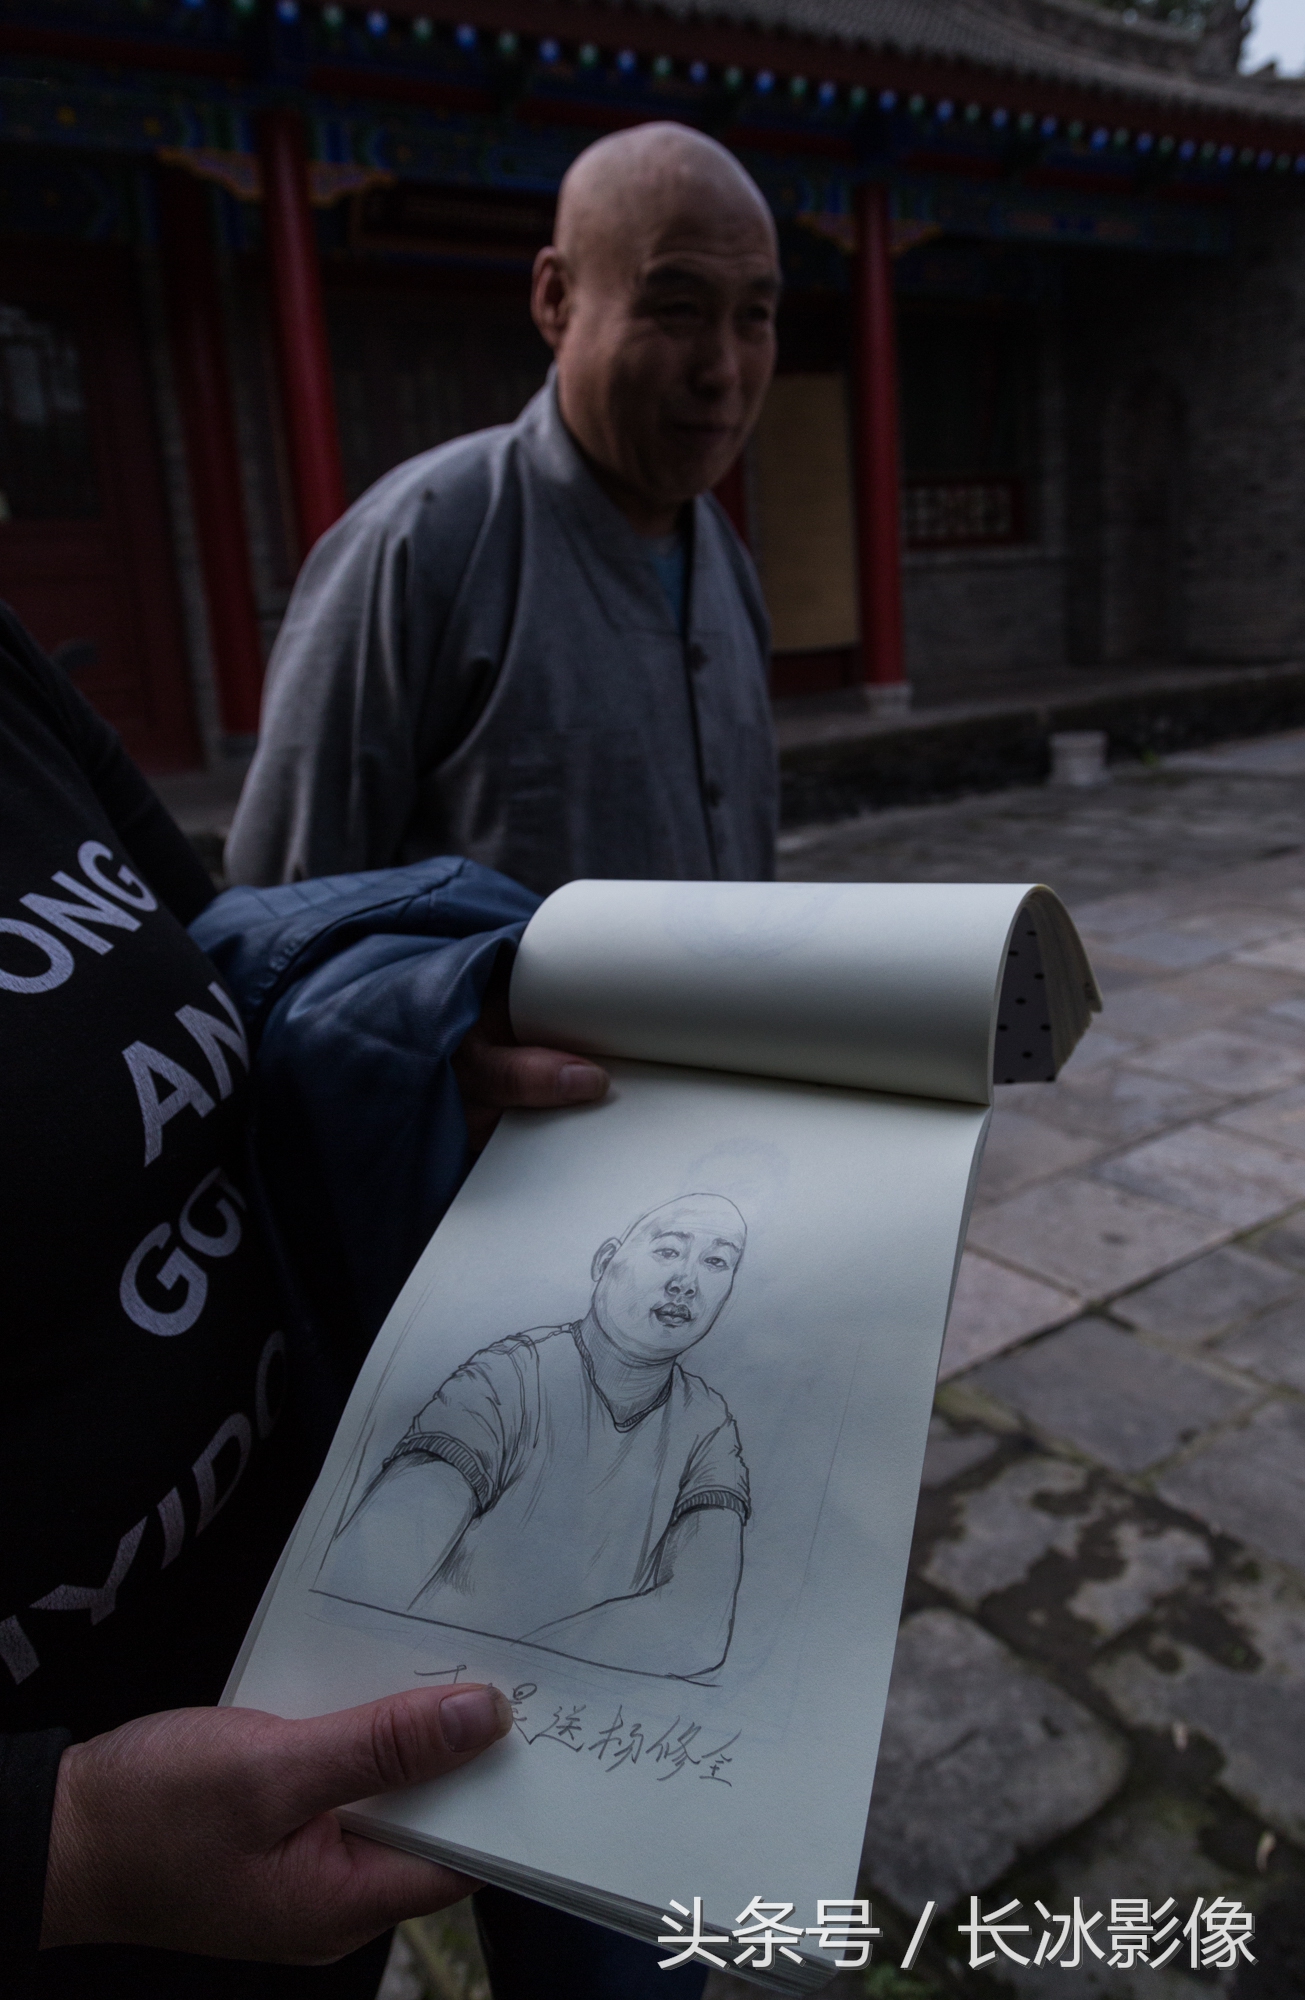 艺术生草堂寺写生画钢笔画 引僧人围观点赞 有一幅画像寺里僧人